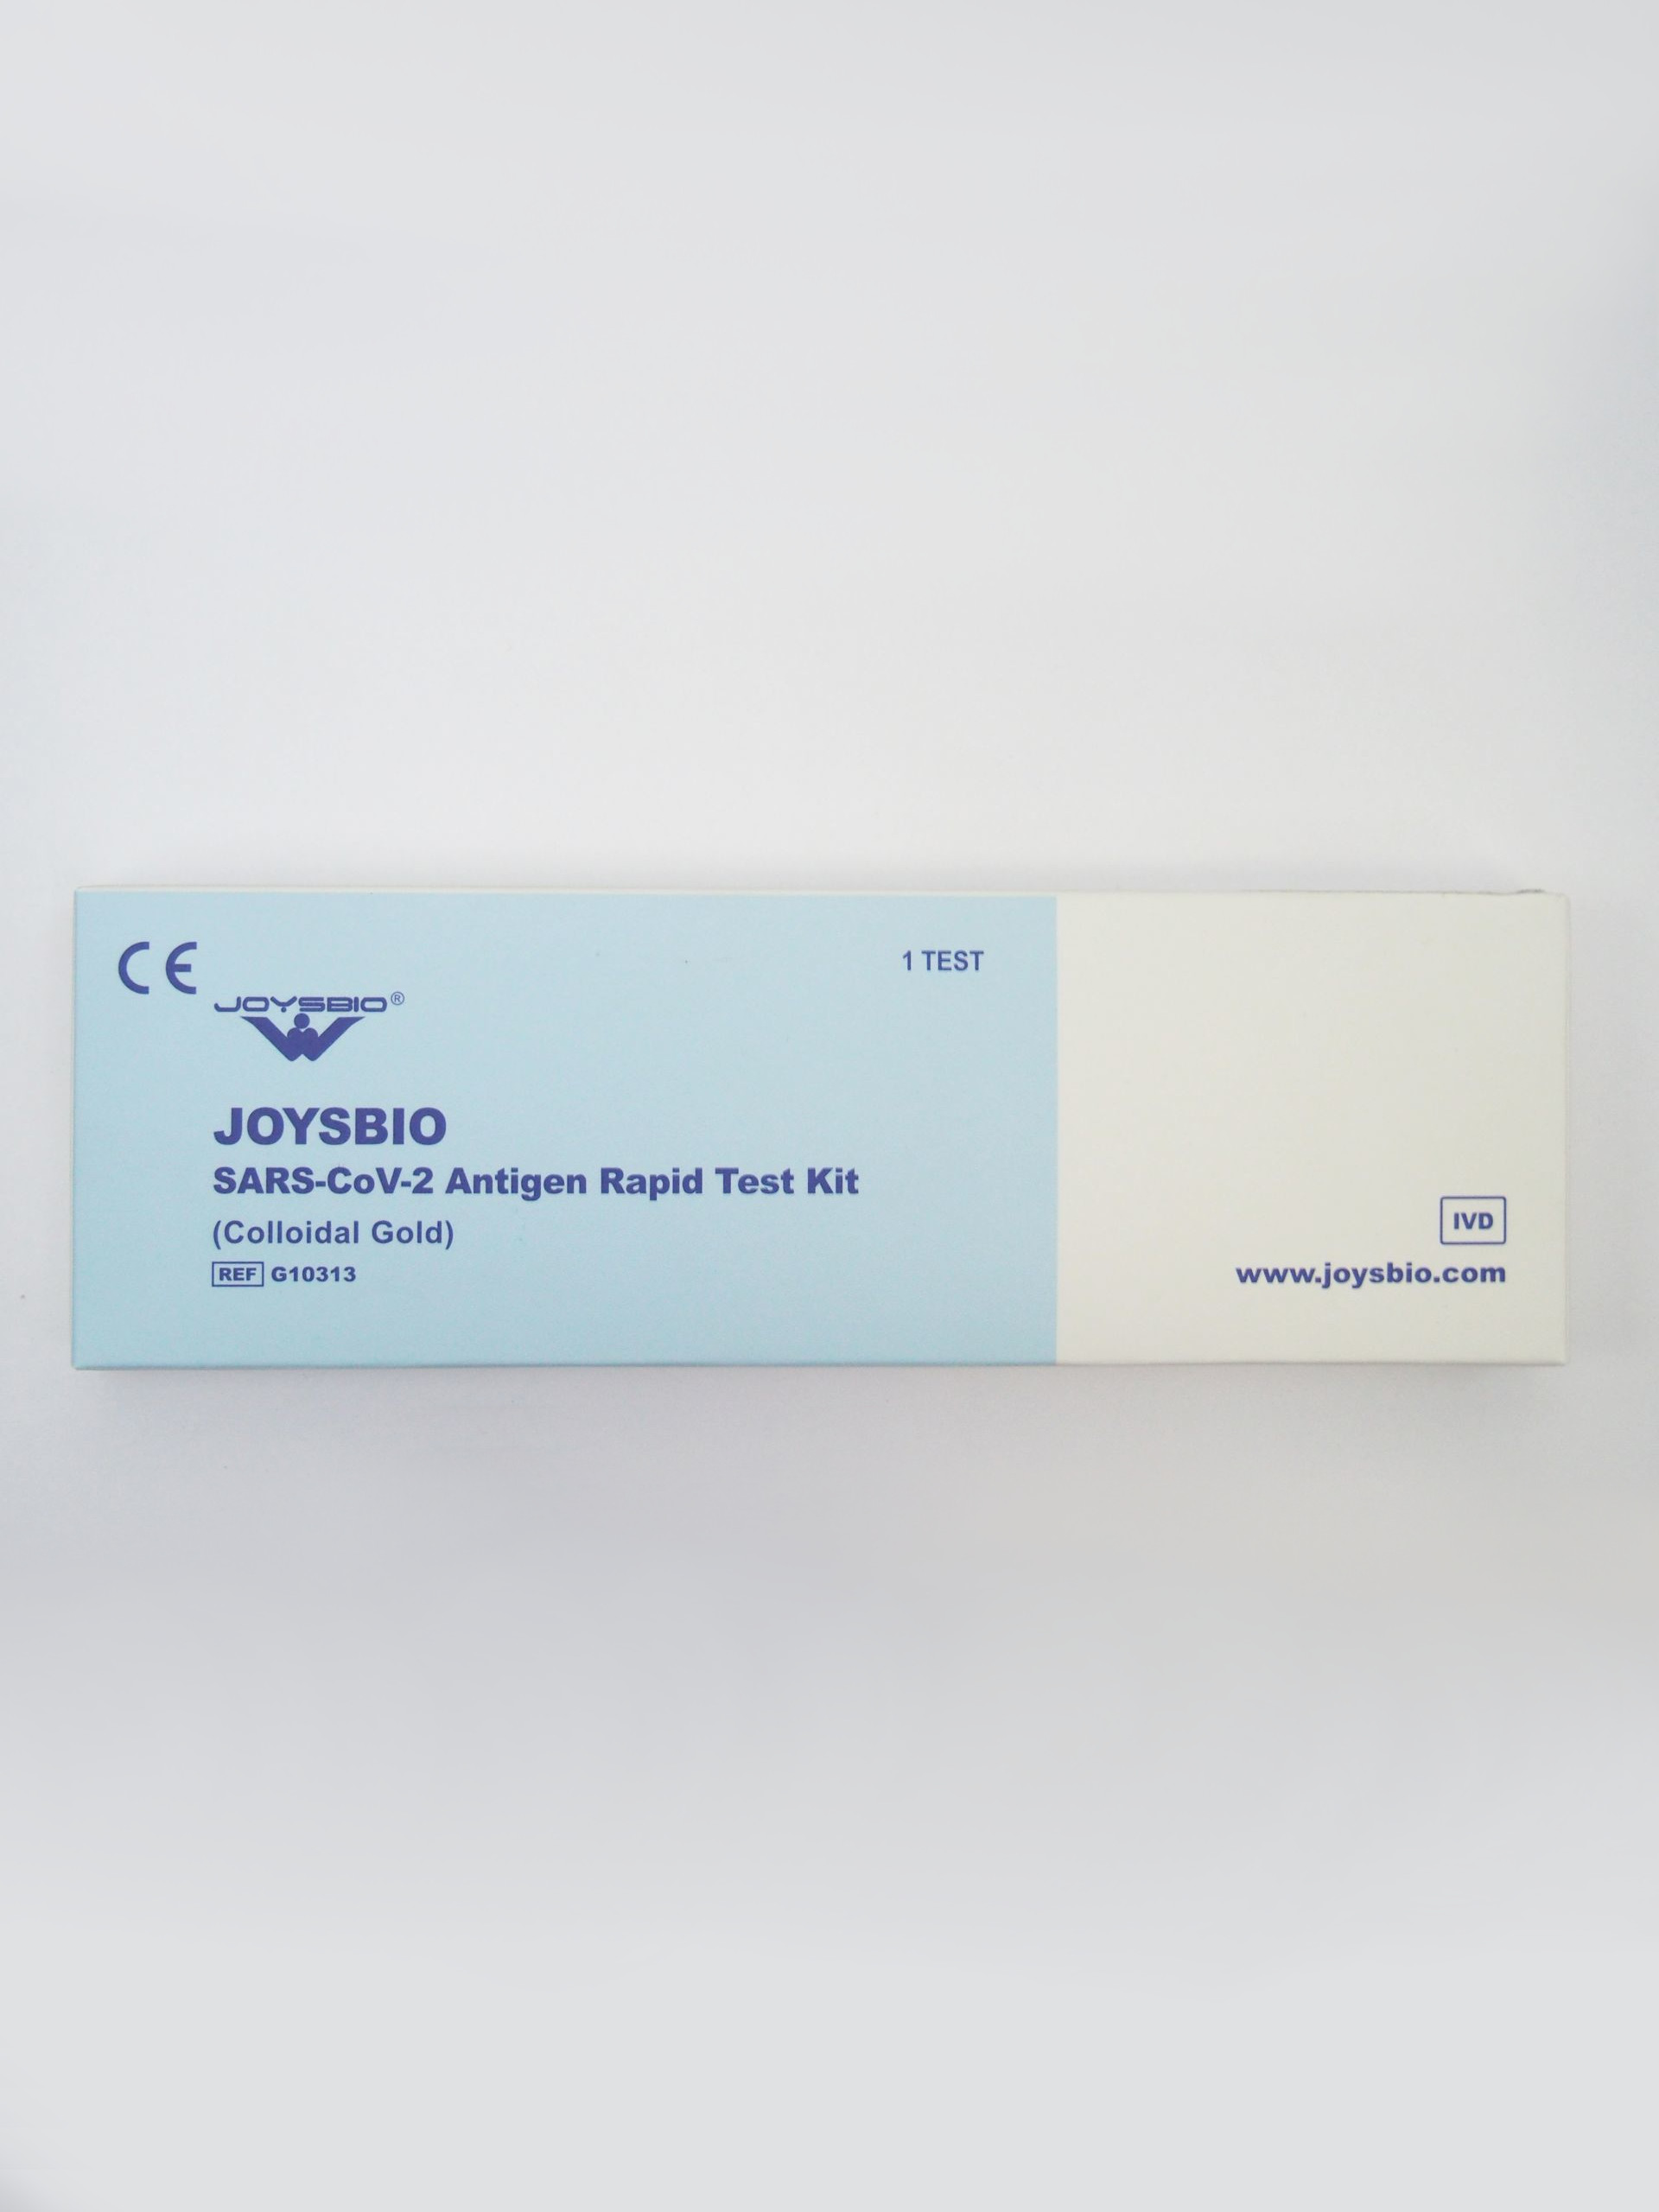 Testy do wykrywania obecności koronawirusa SARS-CoV-2 (COVID-19) JOYSBIO  SARS-CoV-2 Antigen Rapid Test Kit